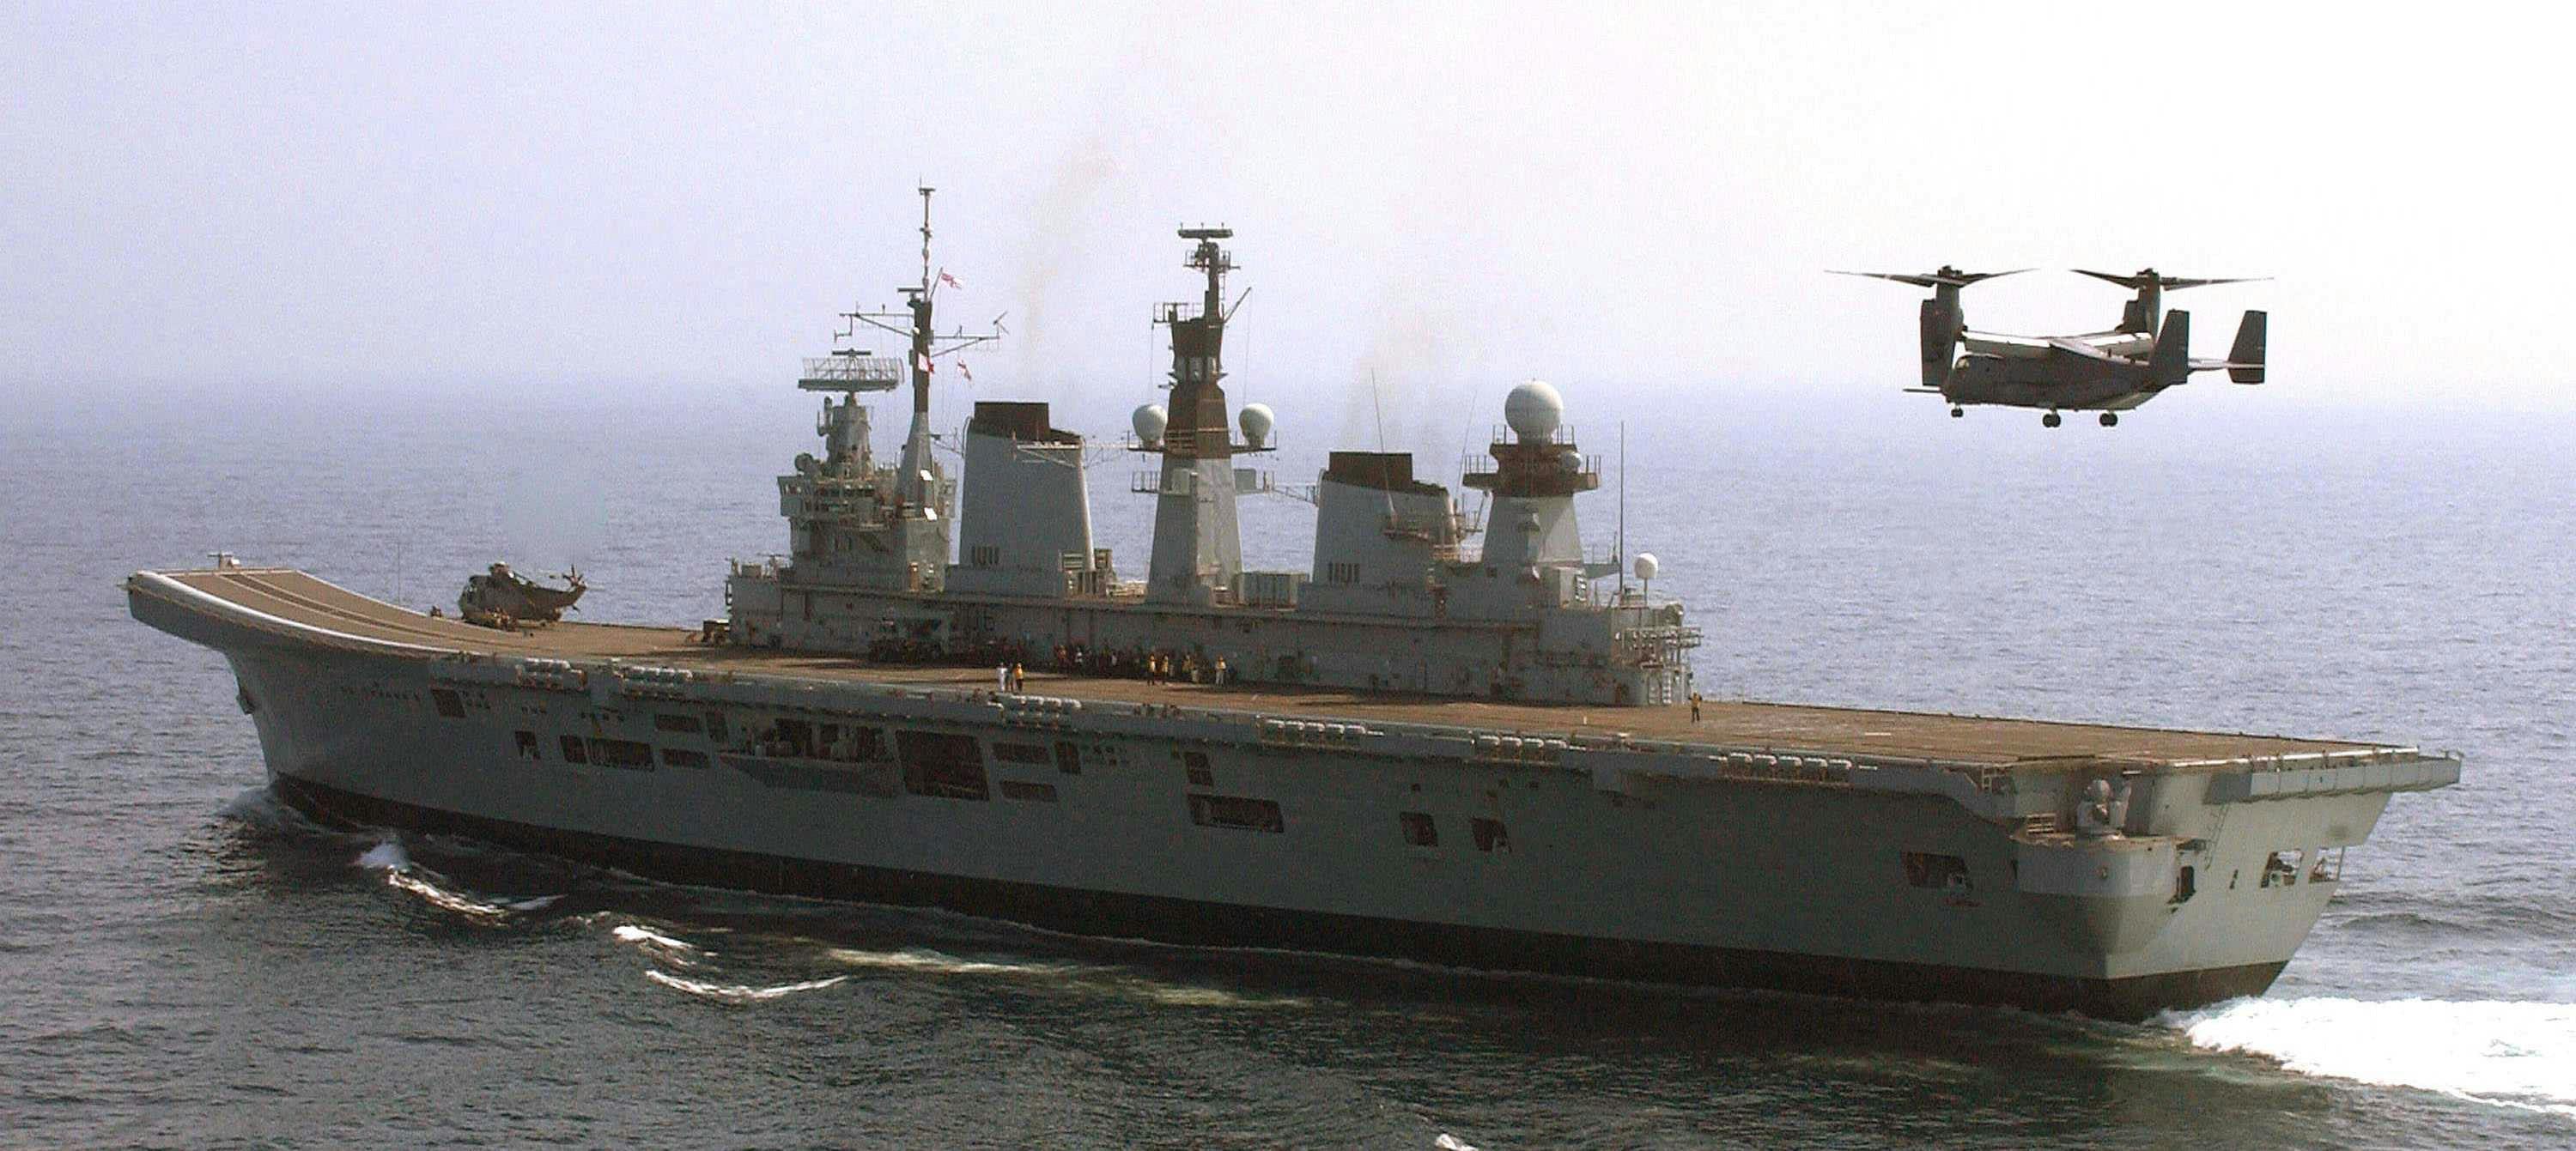 HMS Illustrious took part in V-22 trials.